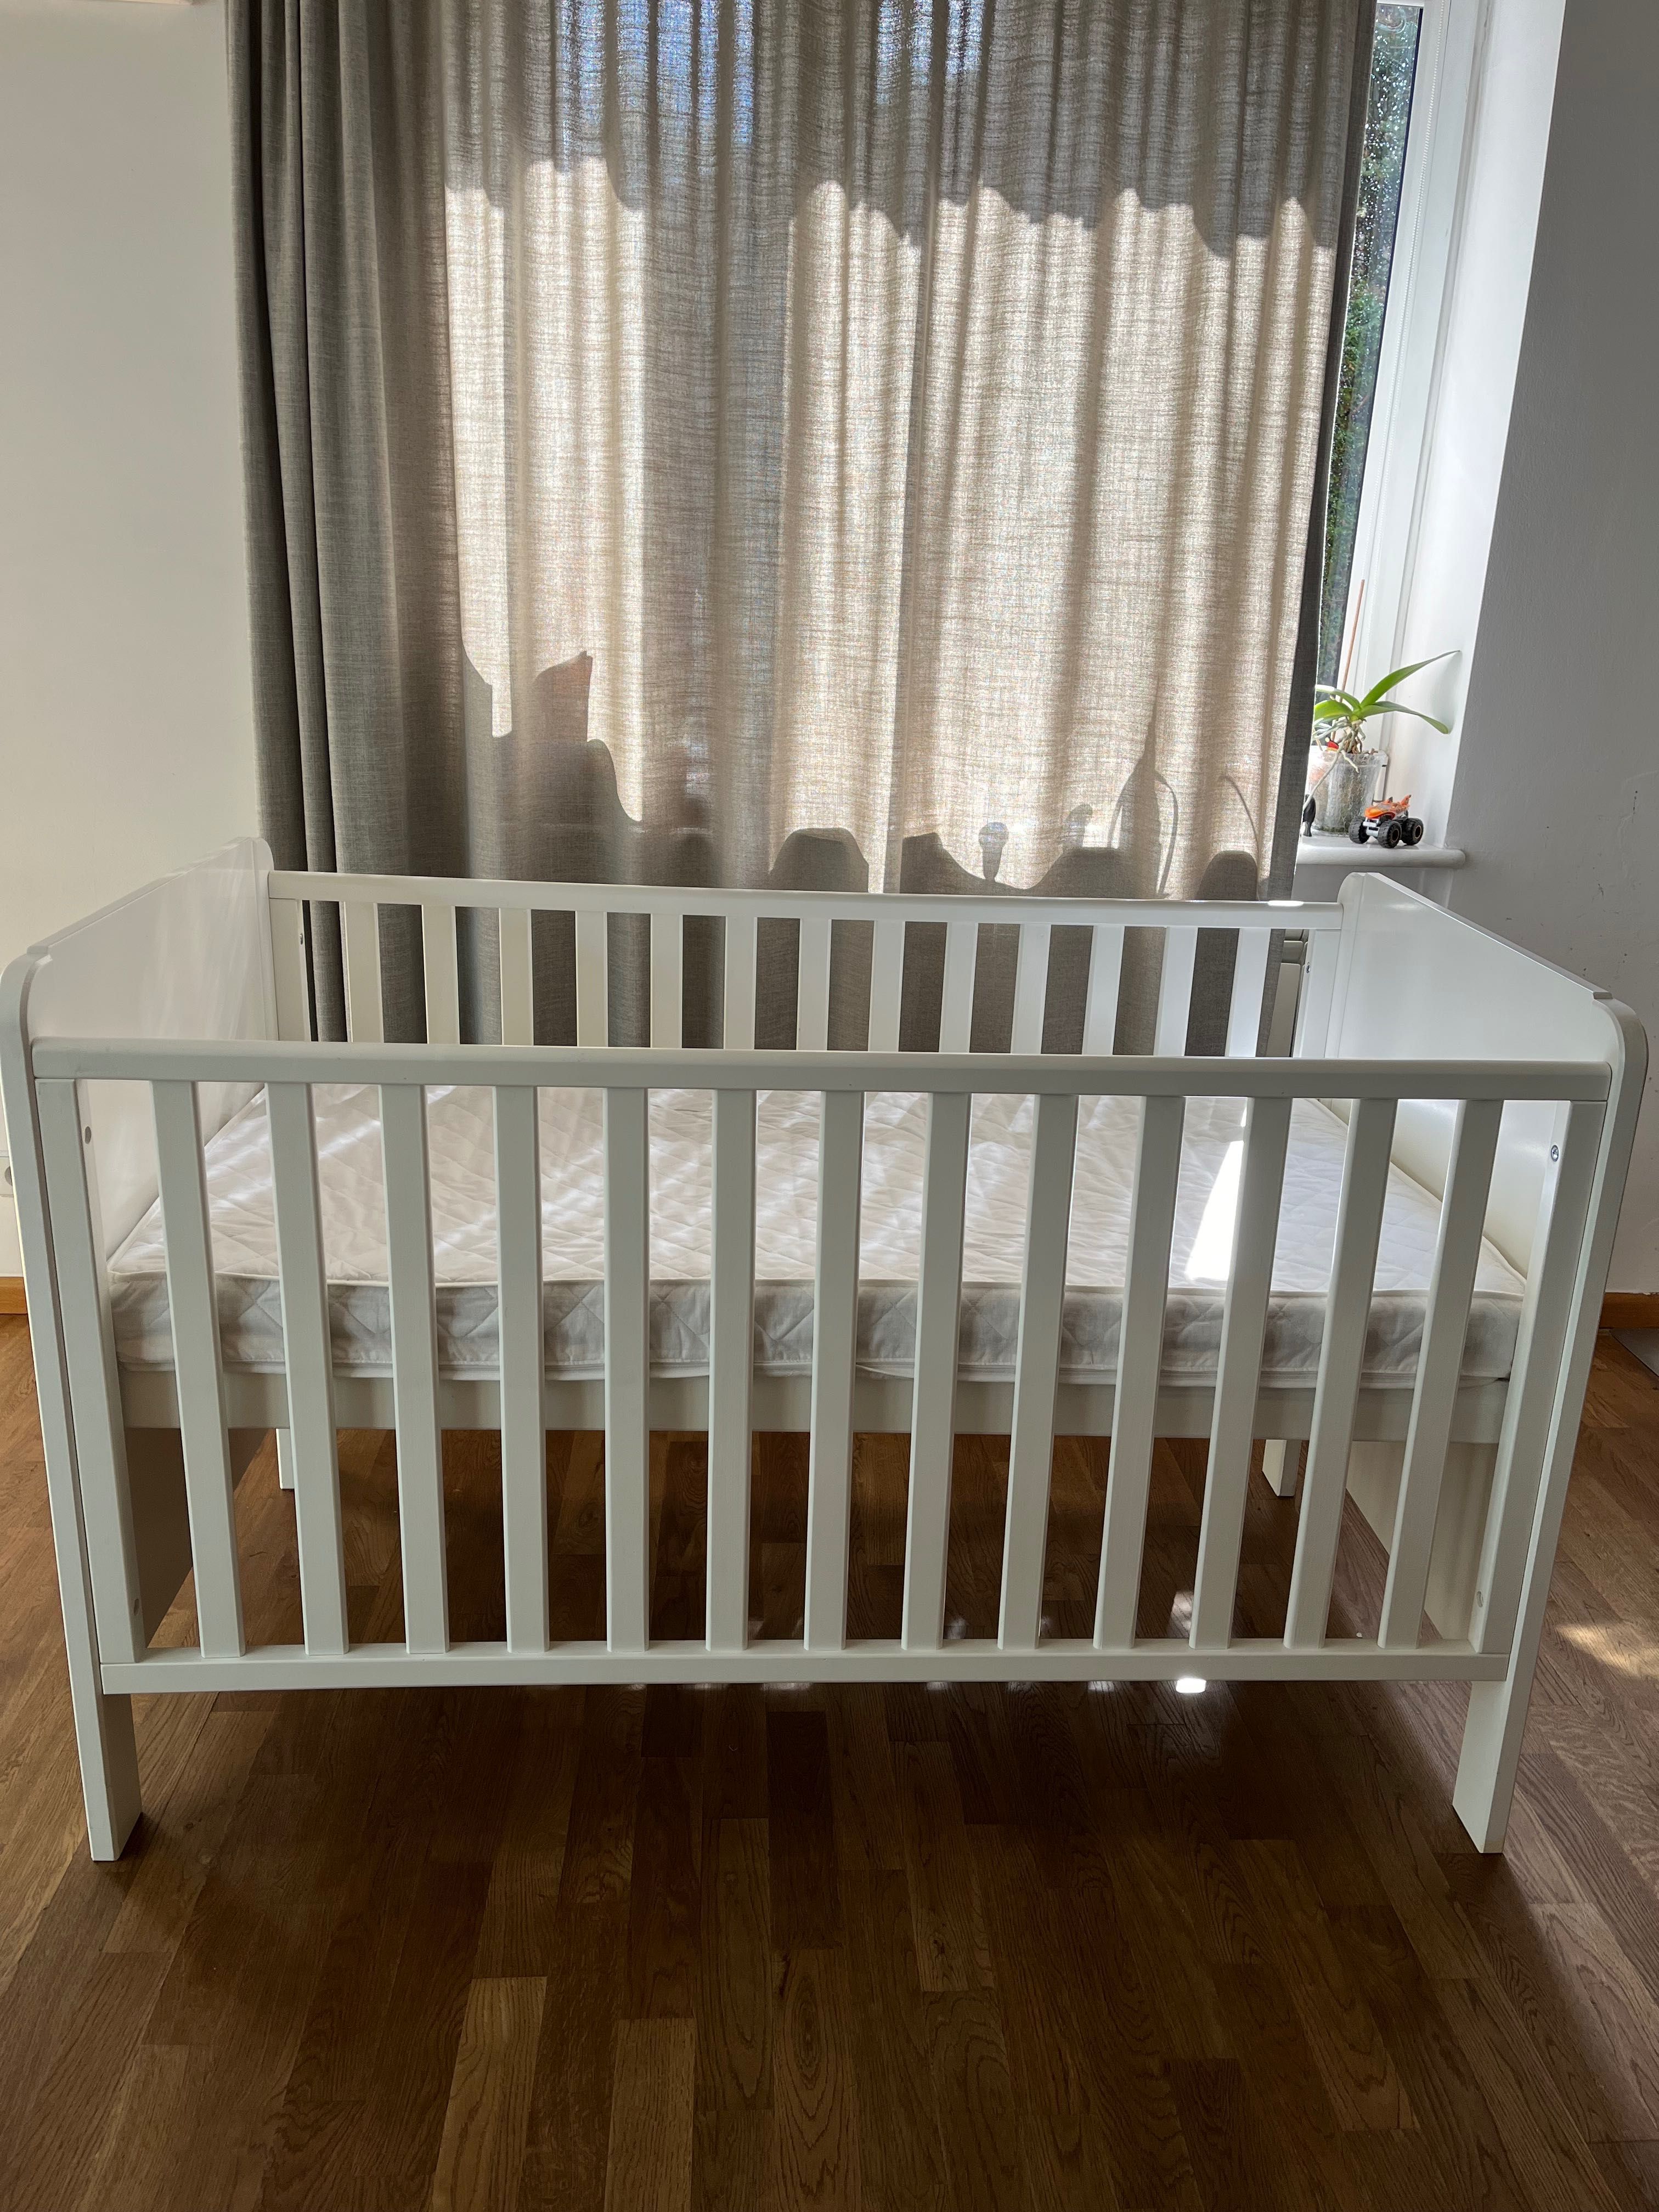 Łóżko niemowlęce/dziecięce firmy Troll, 140x70, 0-7 lat